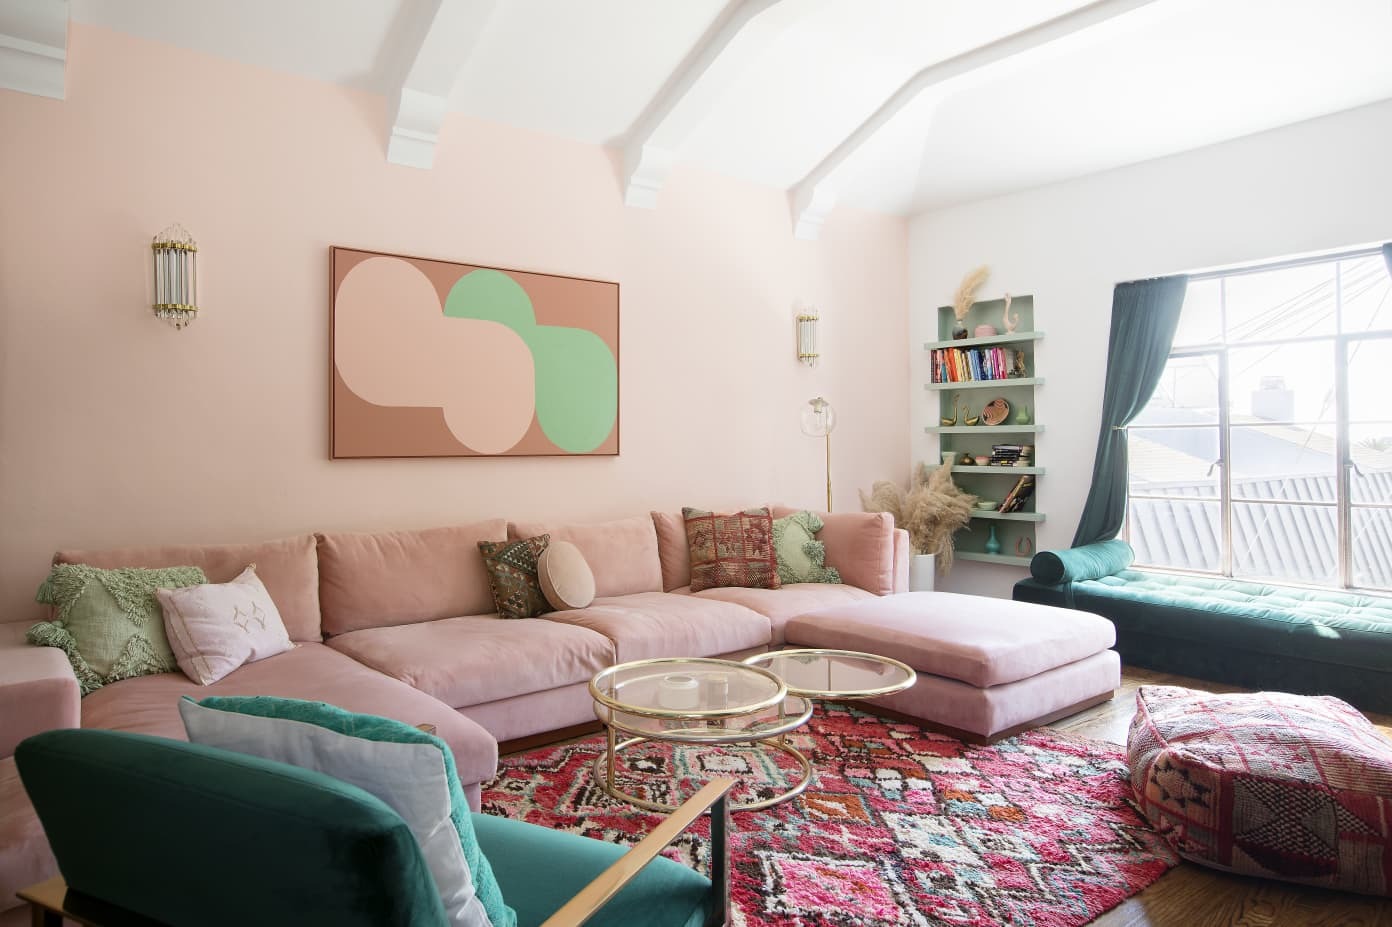 Phòng khách màu hồng với những điểm nhấn xanh nhẹ nhàng